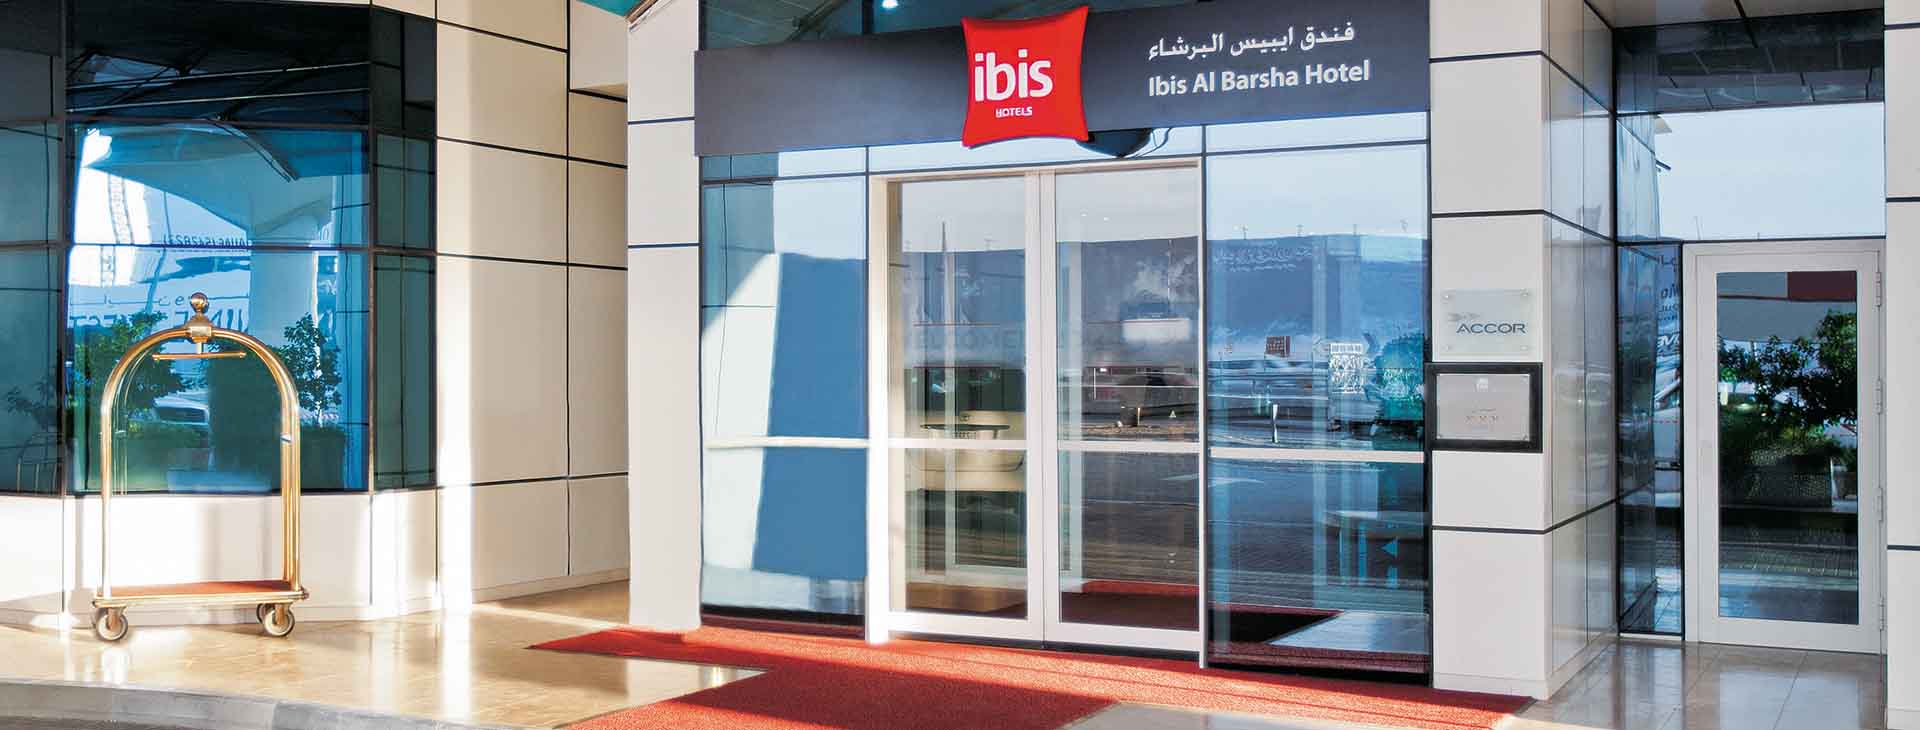 Ibis Al Barsha 